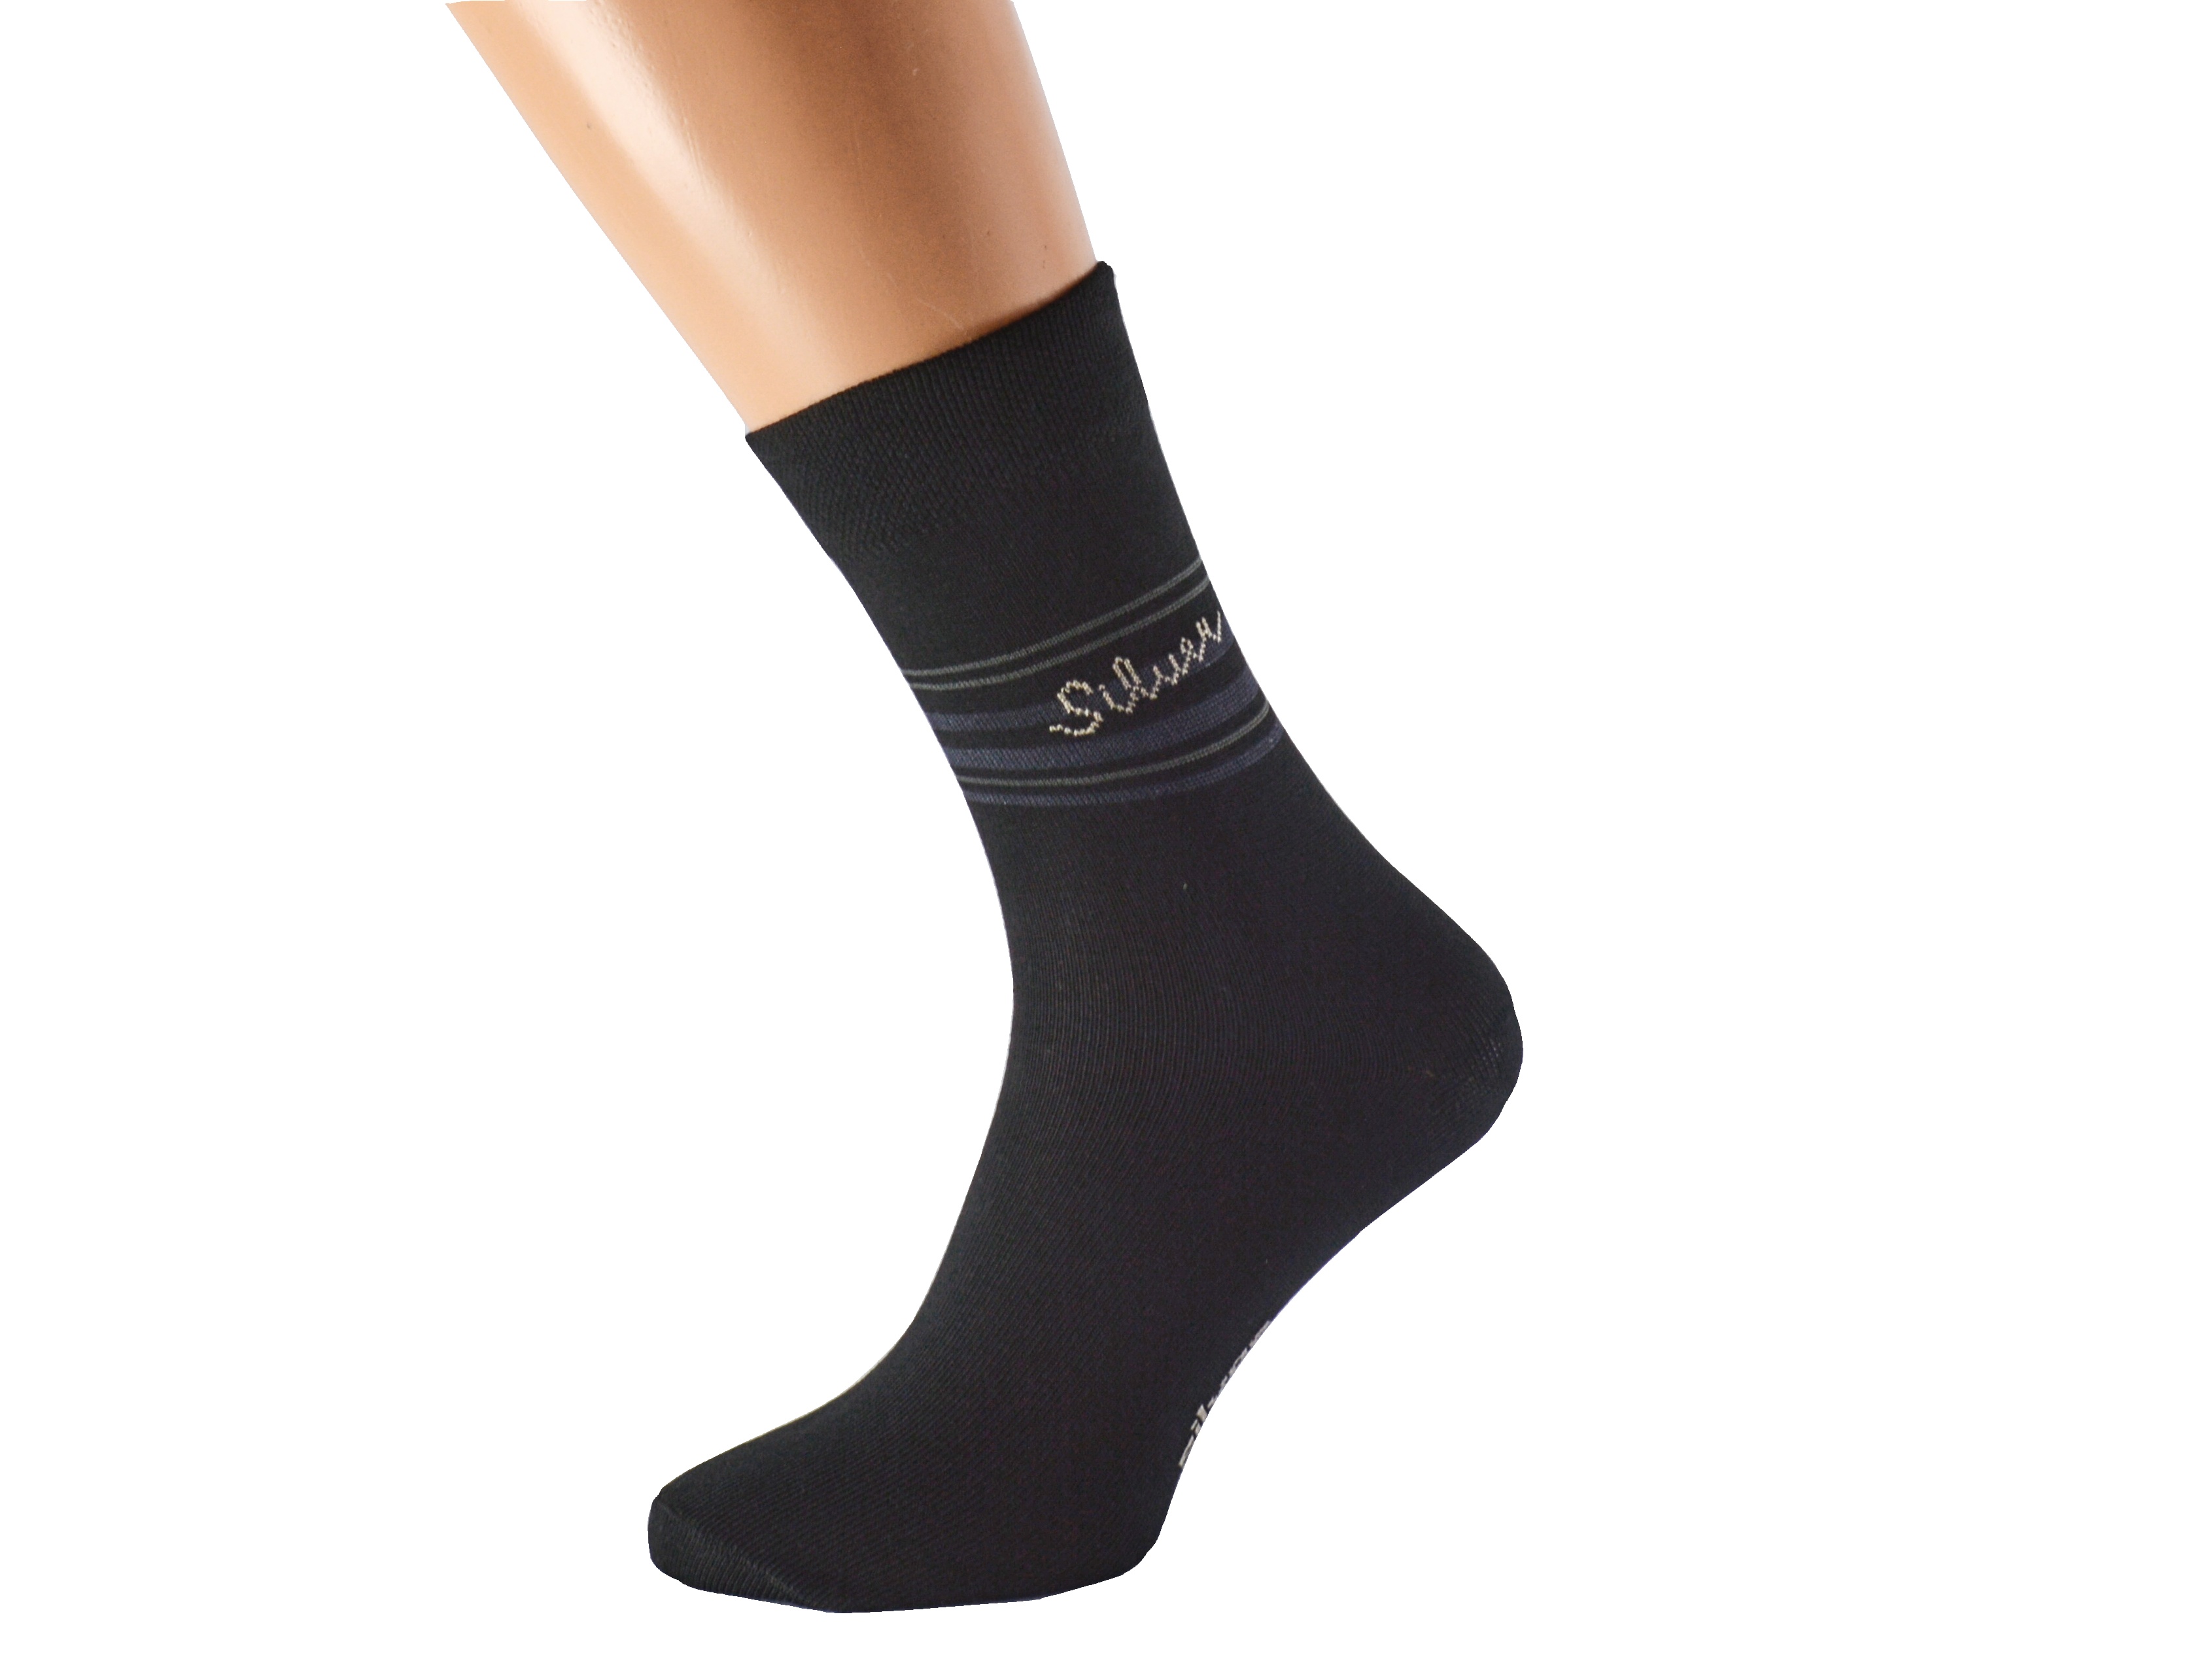 Antibakteriální ponožky proti pocení SILVER KUKS Barva: Černé, Velikost: EUR 41-42 (UK 7-8)